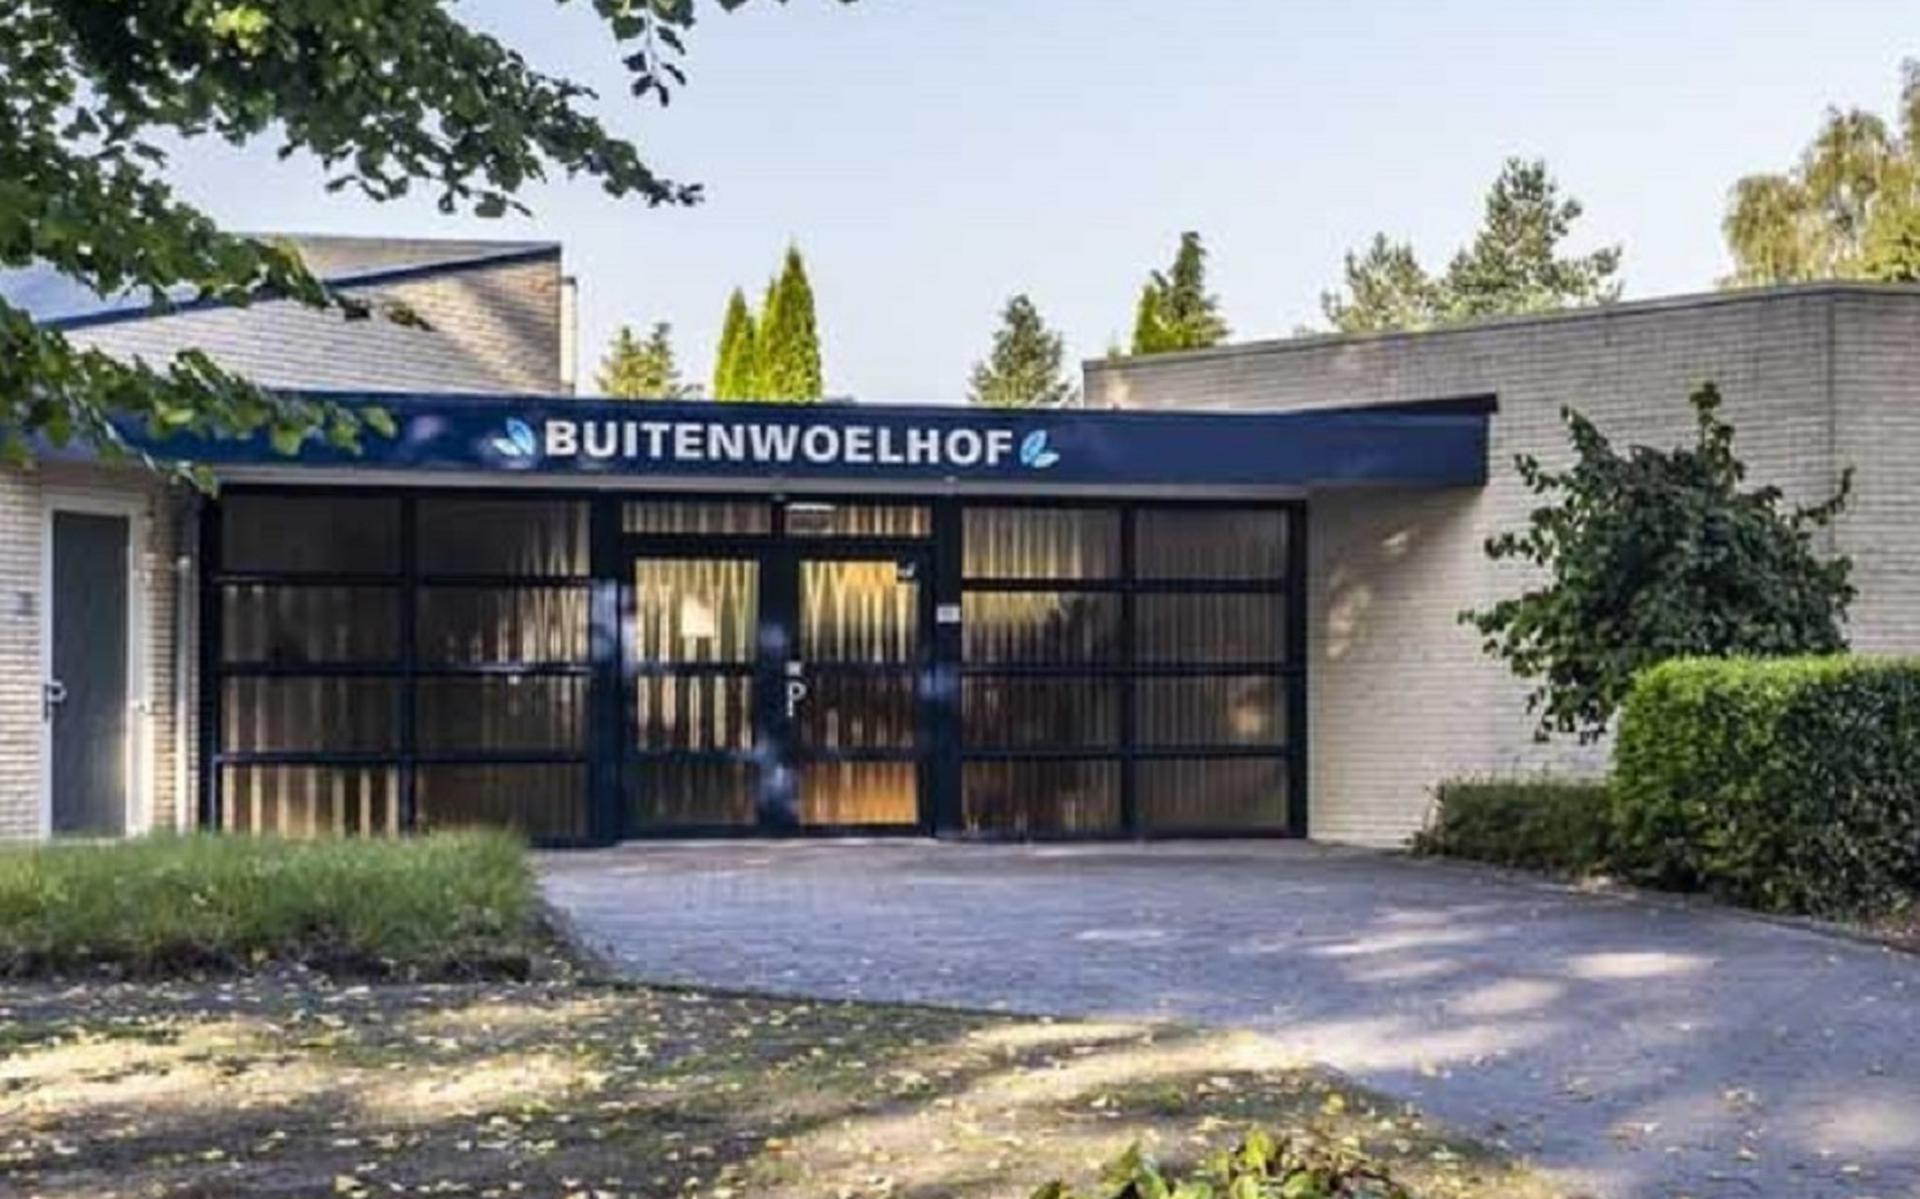 Uitvaartcentrum Buitenwoelhof aan de  Langeleegte 54 in Veendam.